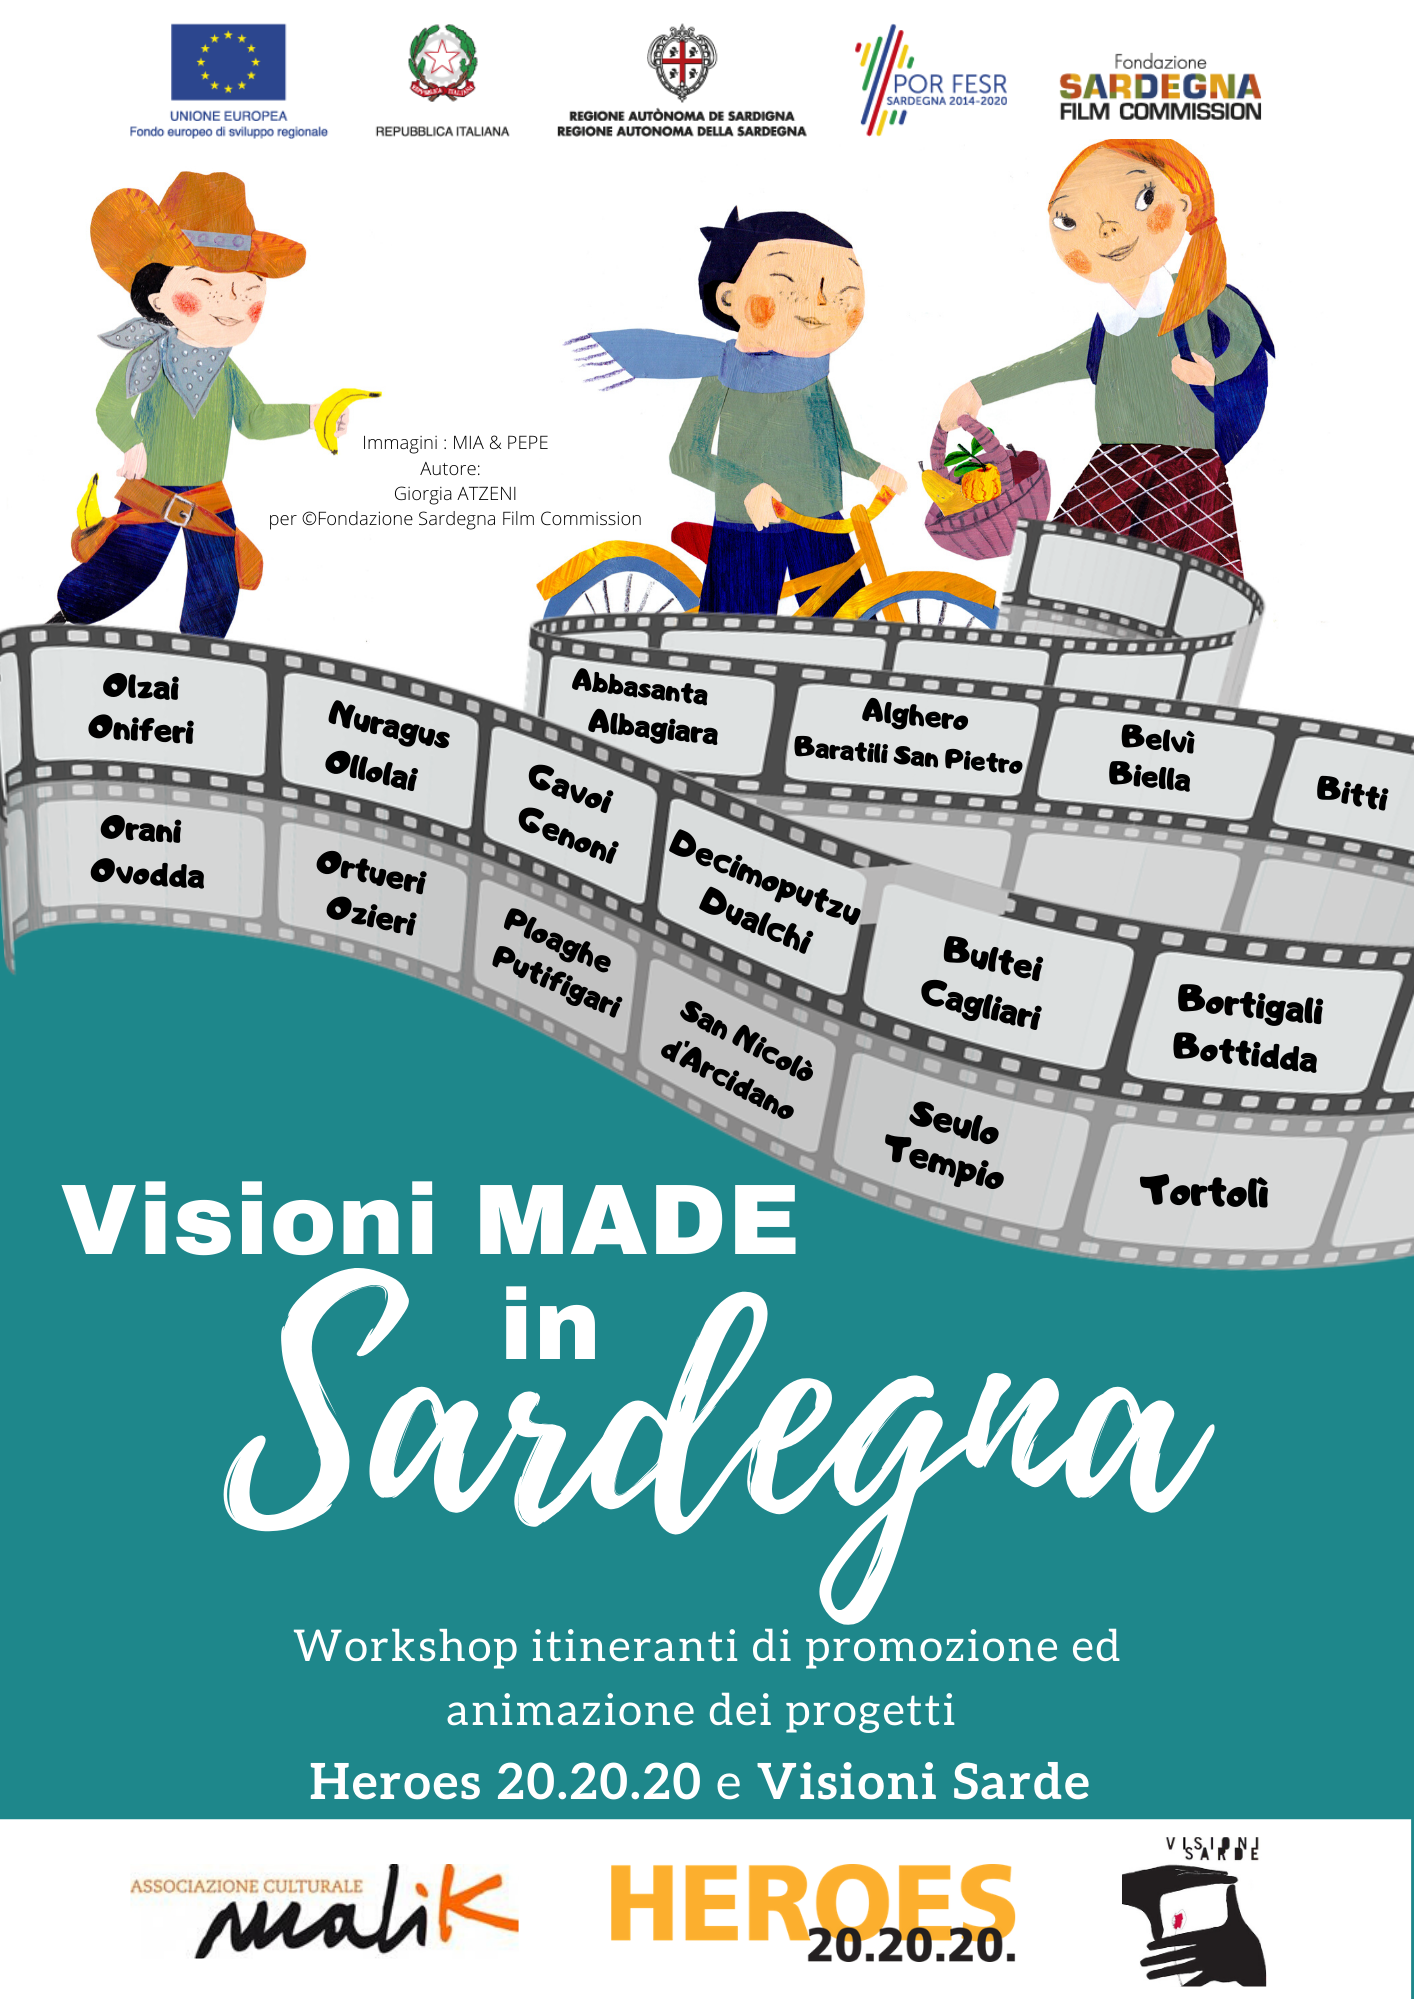 Visioni green “made in Sardegna”: ambiente, ecosostenibilità e comunità dalla Sardegna al mondo